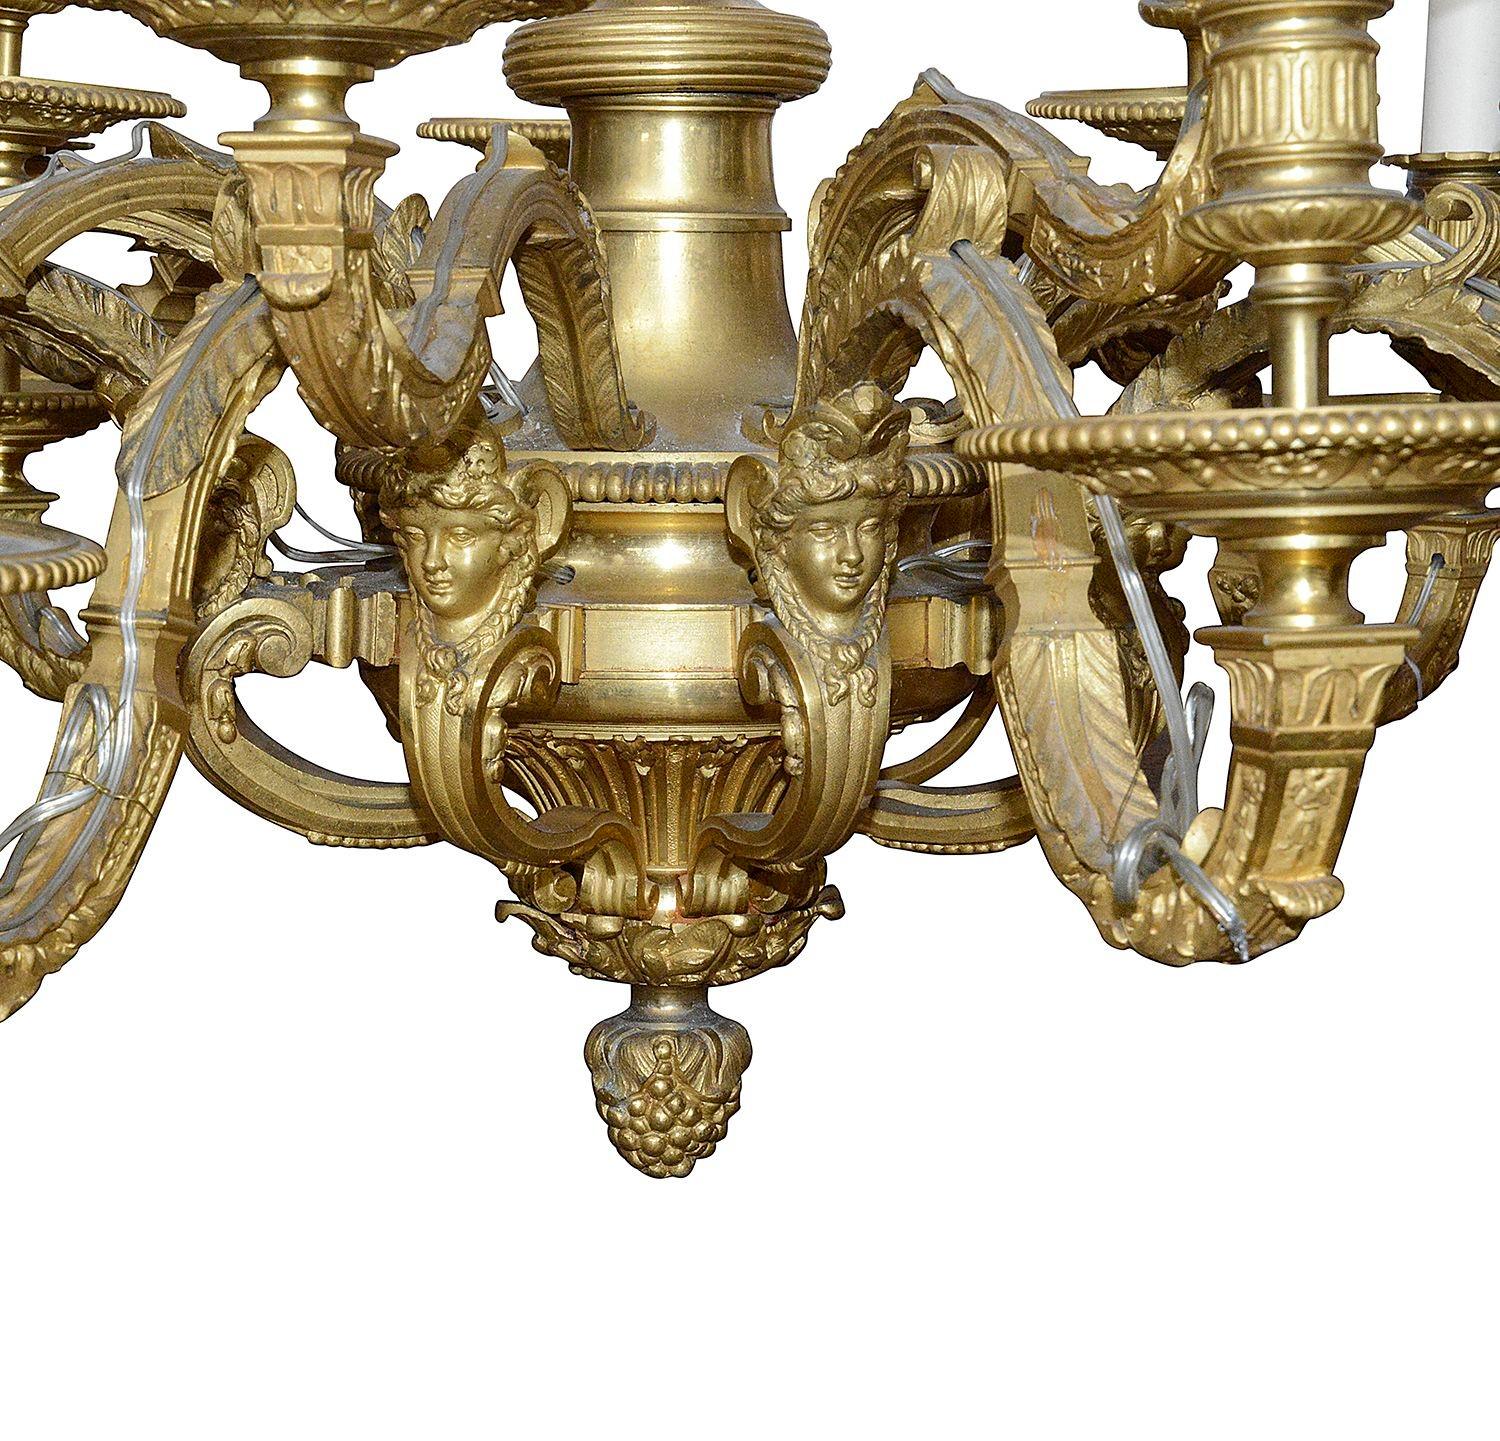 Eine sehr beeindruckende 19. Jahrhundert vergoldet Ormolu Louis XVI-Stil 18 Zweige Kronleuchter, mit klassischen Monopodien montiert, um die zentrale Säule.

Charge 74